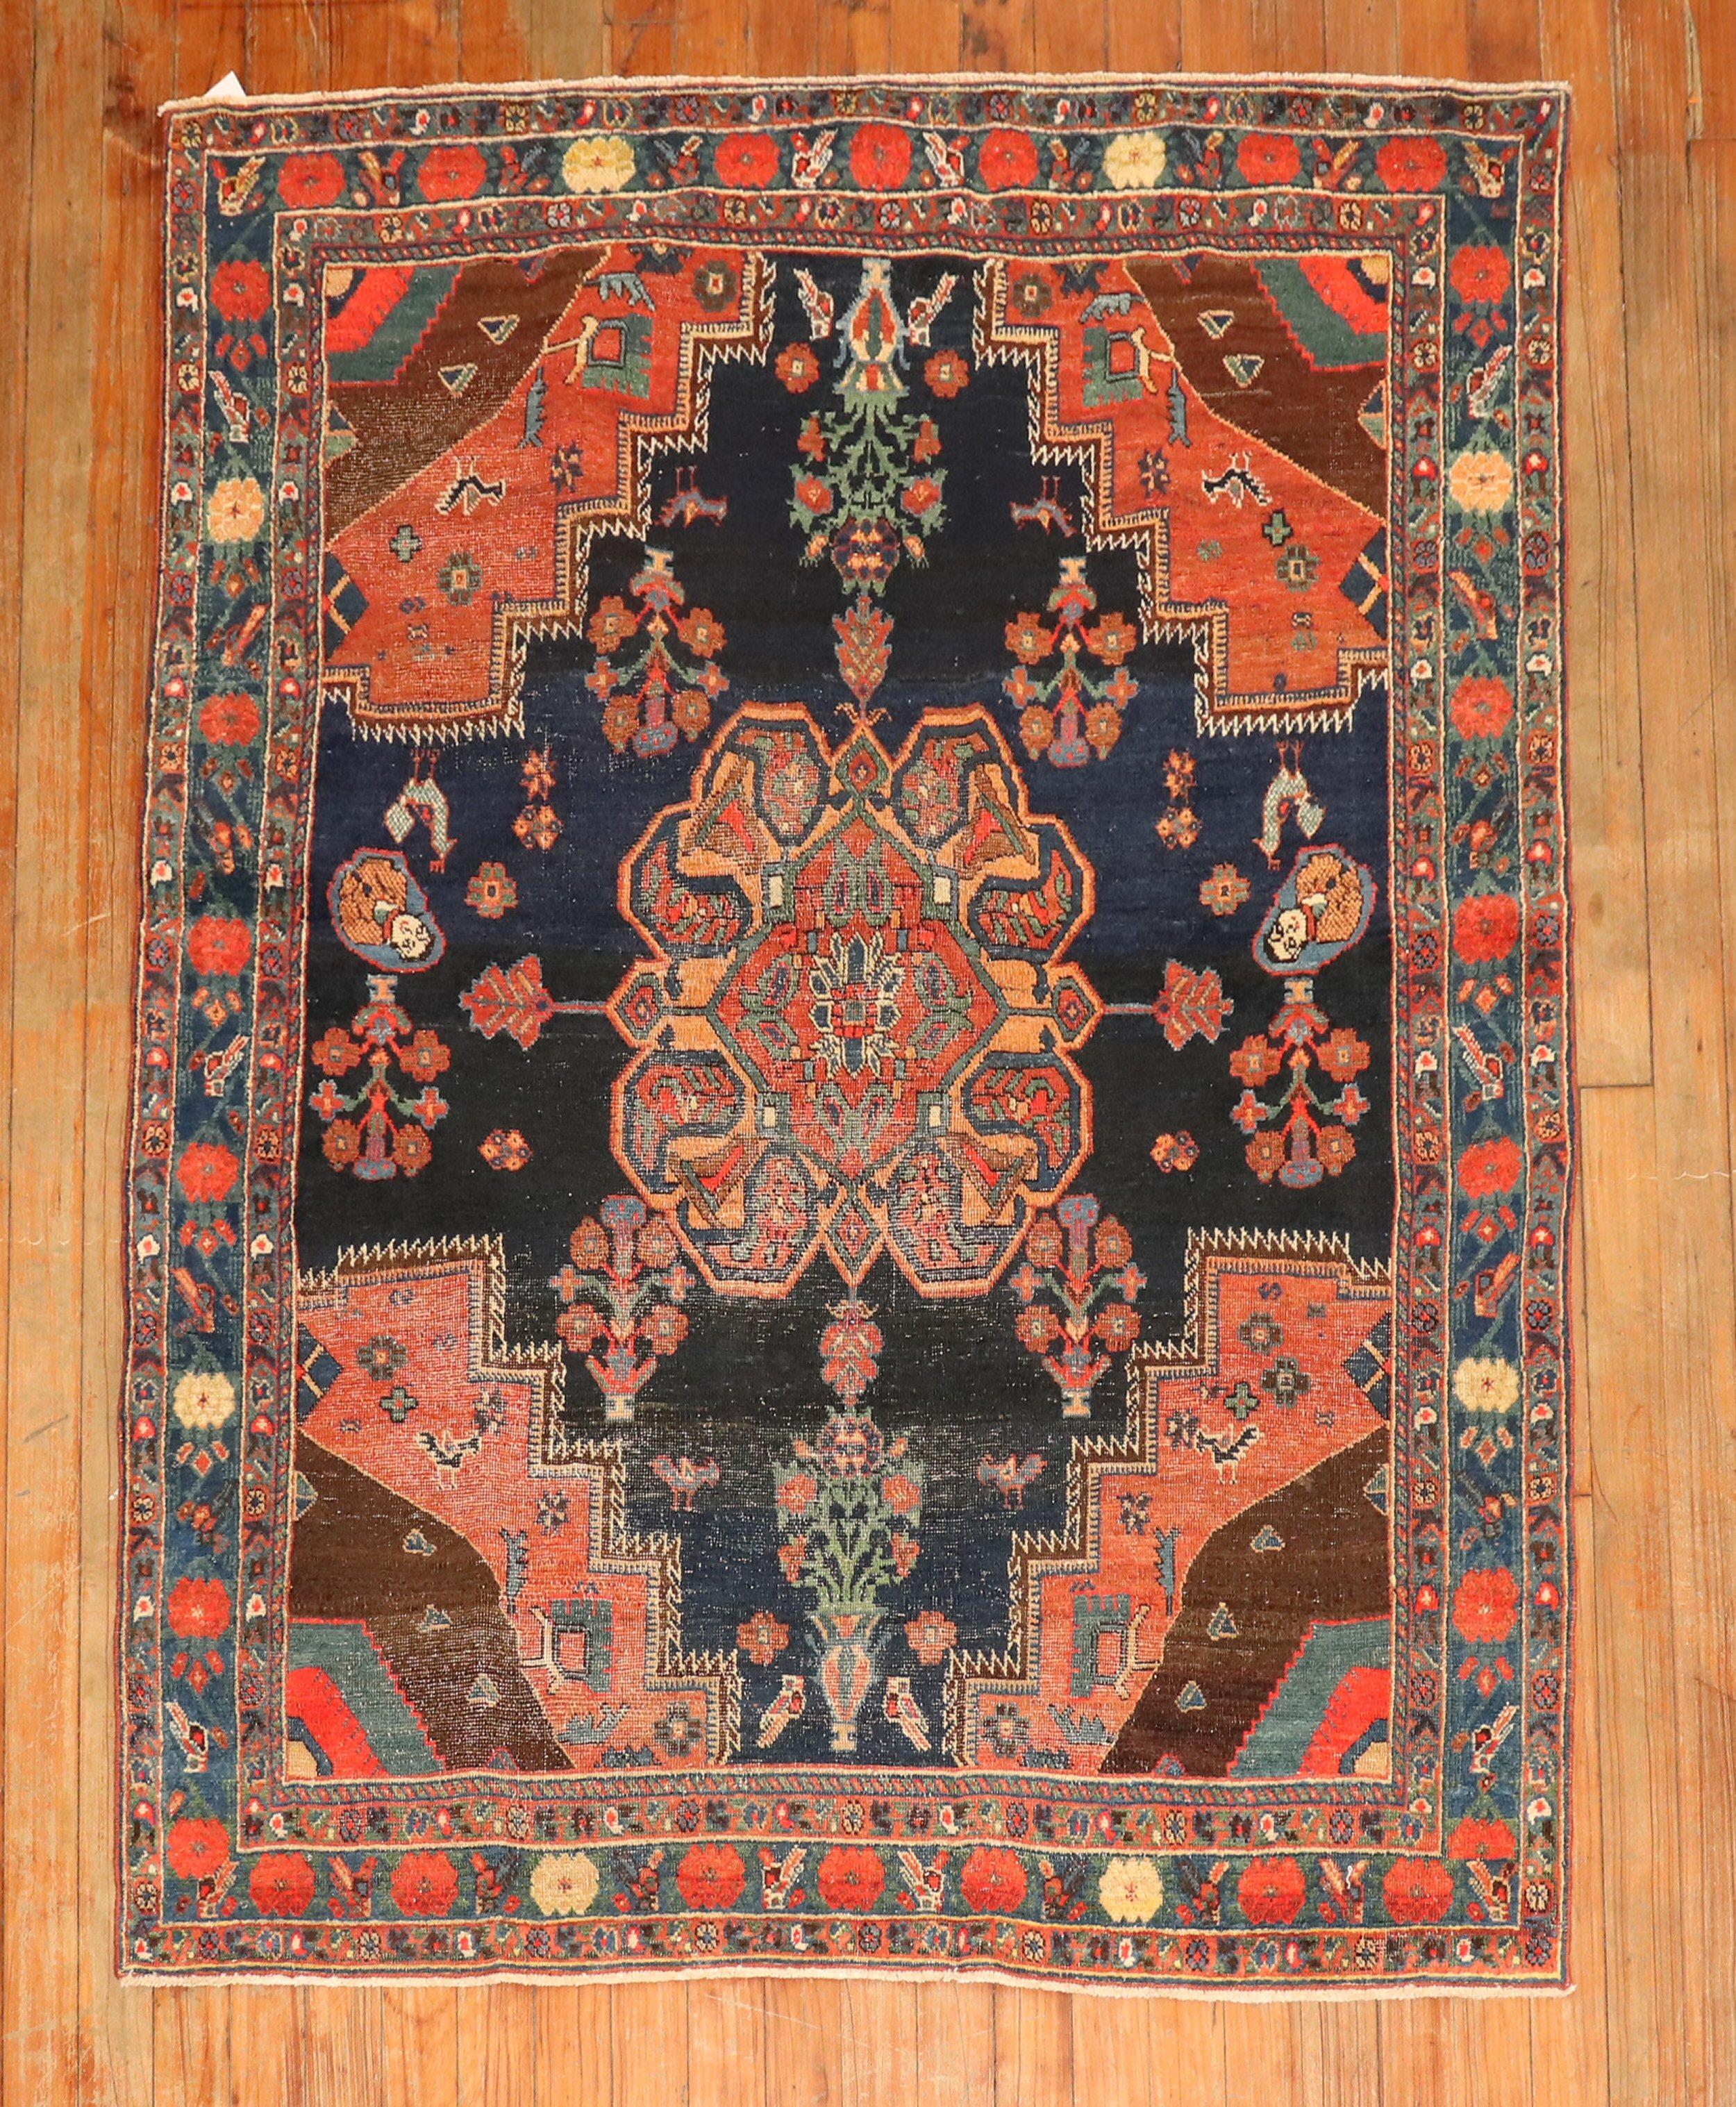  Persischer Afshar-Teppich aus dem frühen 20. Jahrhundert

Teppich nein.	j1908

Größe	3' 8